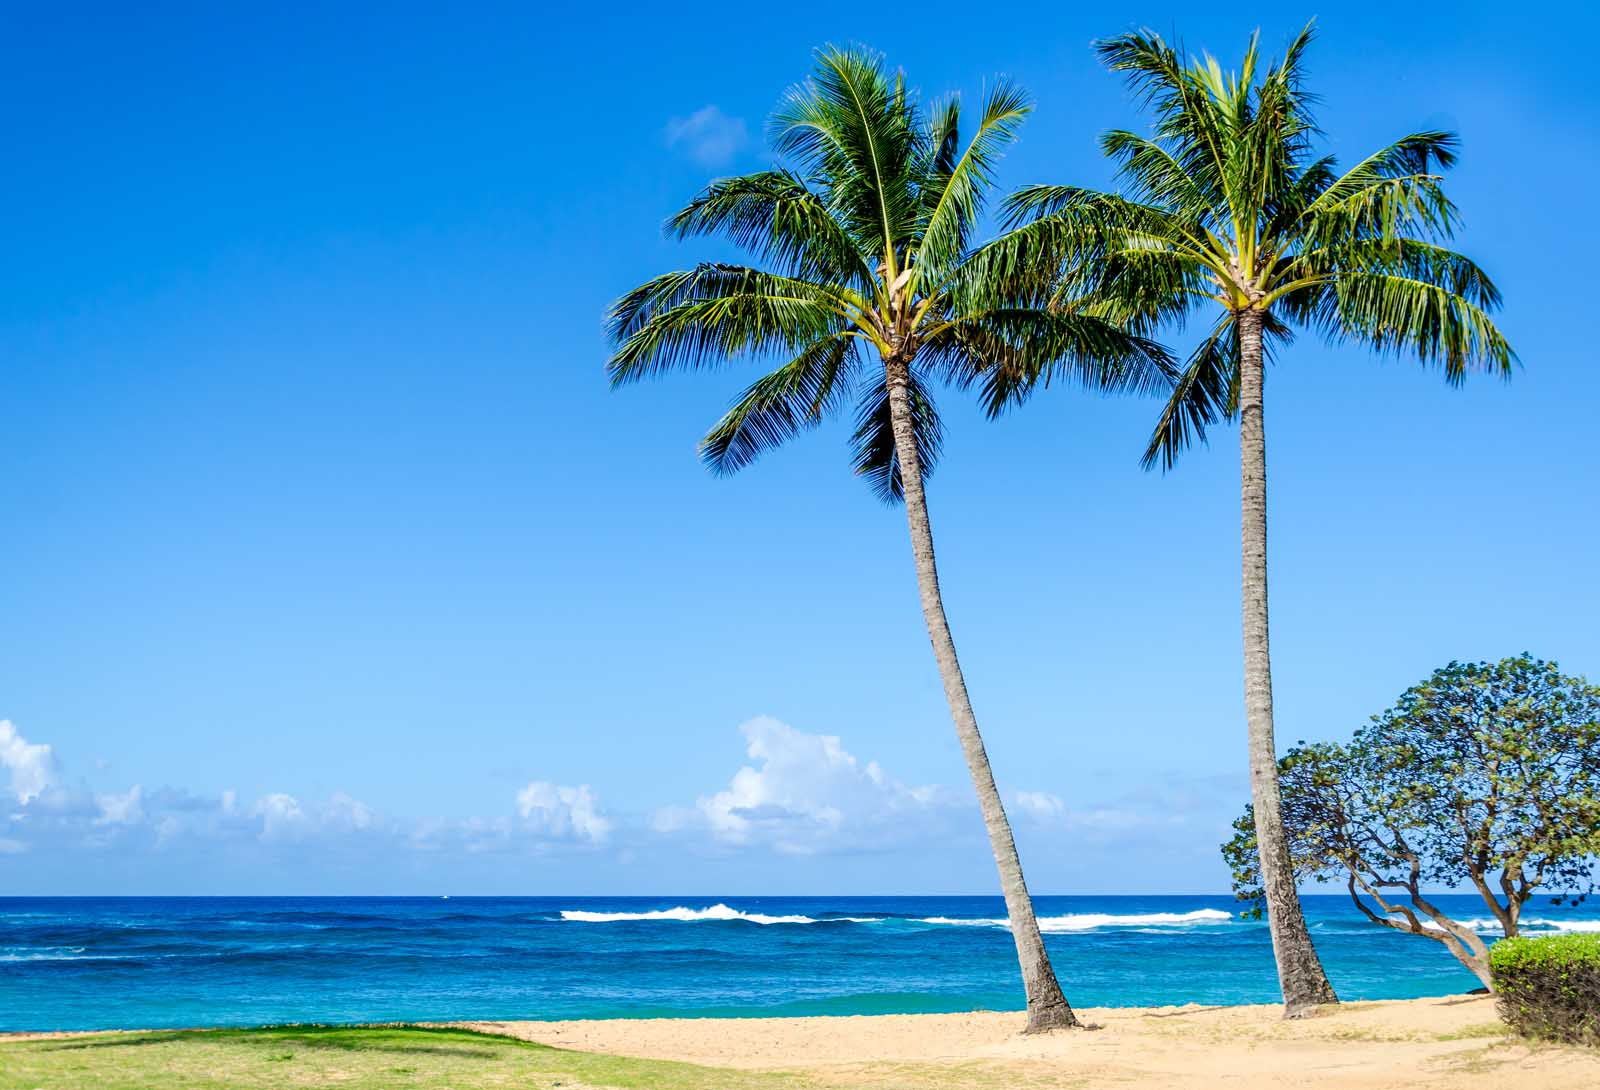 Best Things to do in Kauai Poipu Beach Park